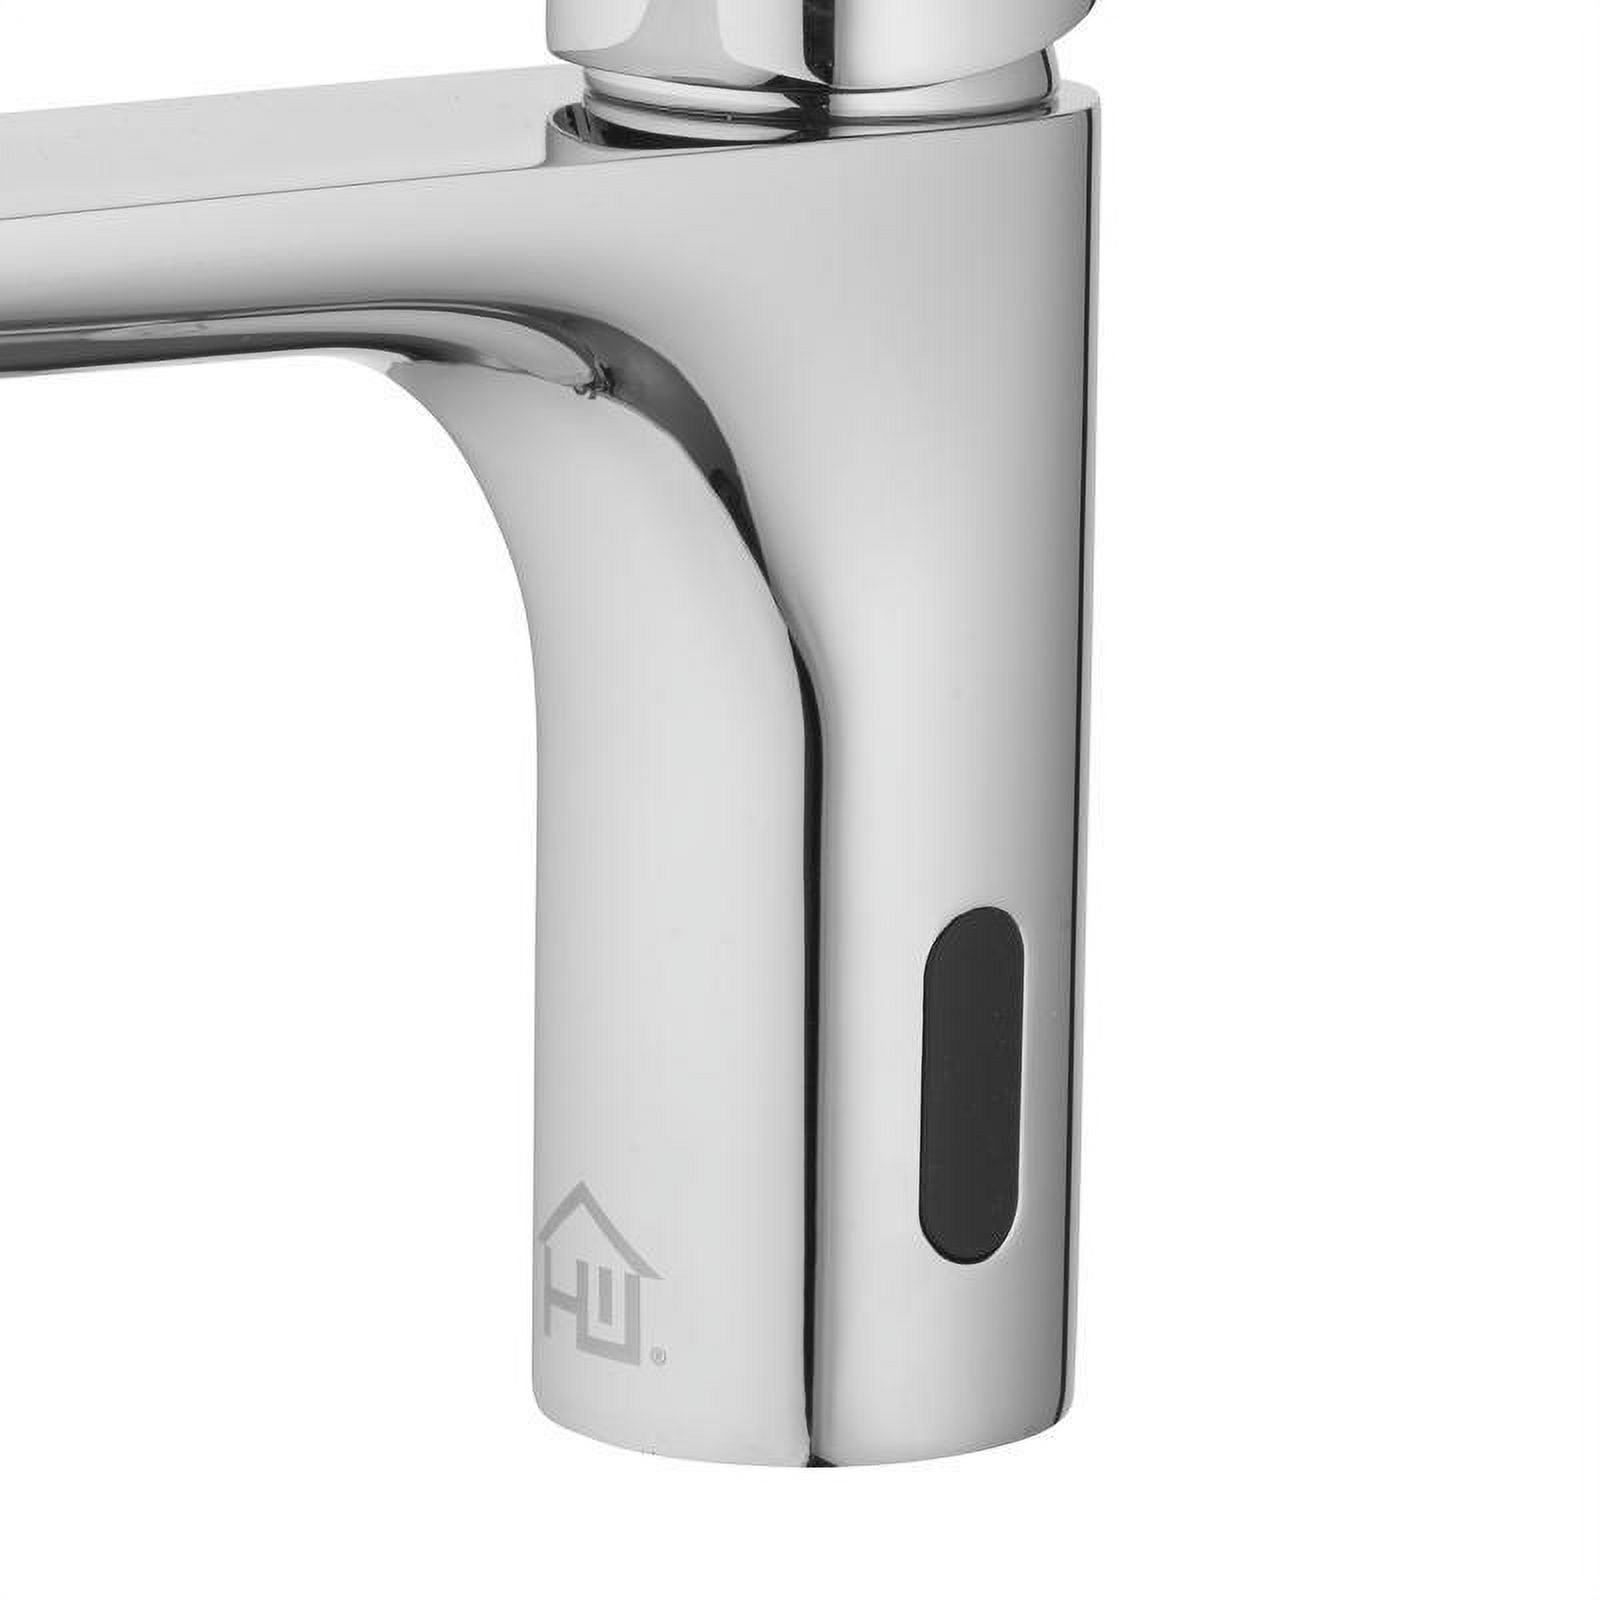 Homewerks Worldwide 4000626 2 in. Motion Sensing Single-Handle Bathroom Sink Faucet, Chrome - image 3 of 10